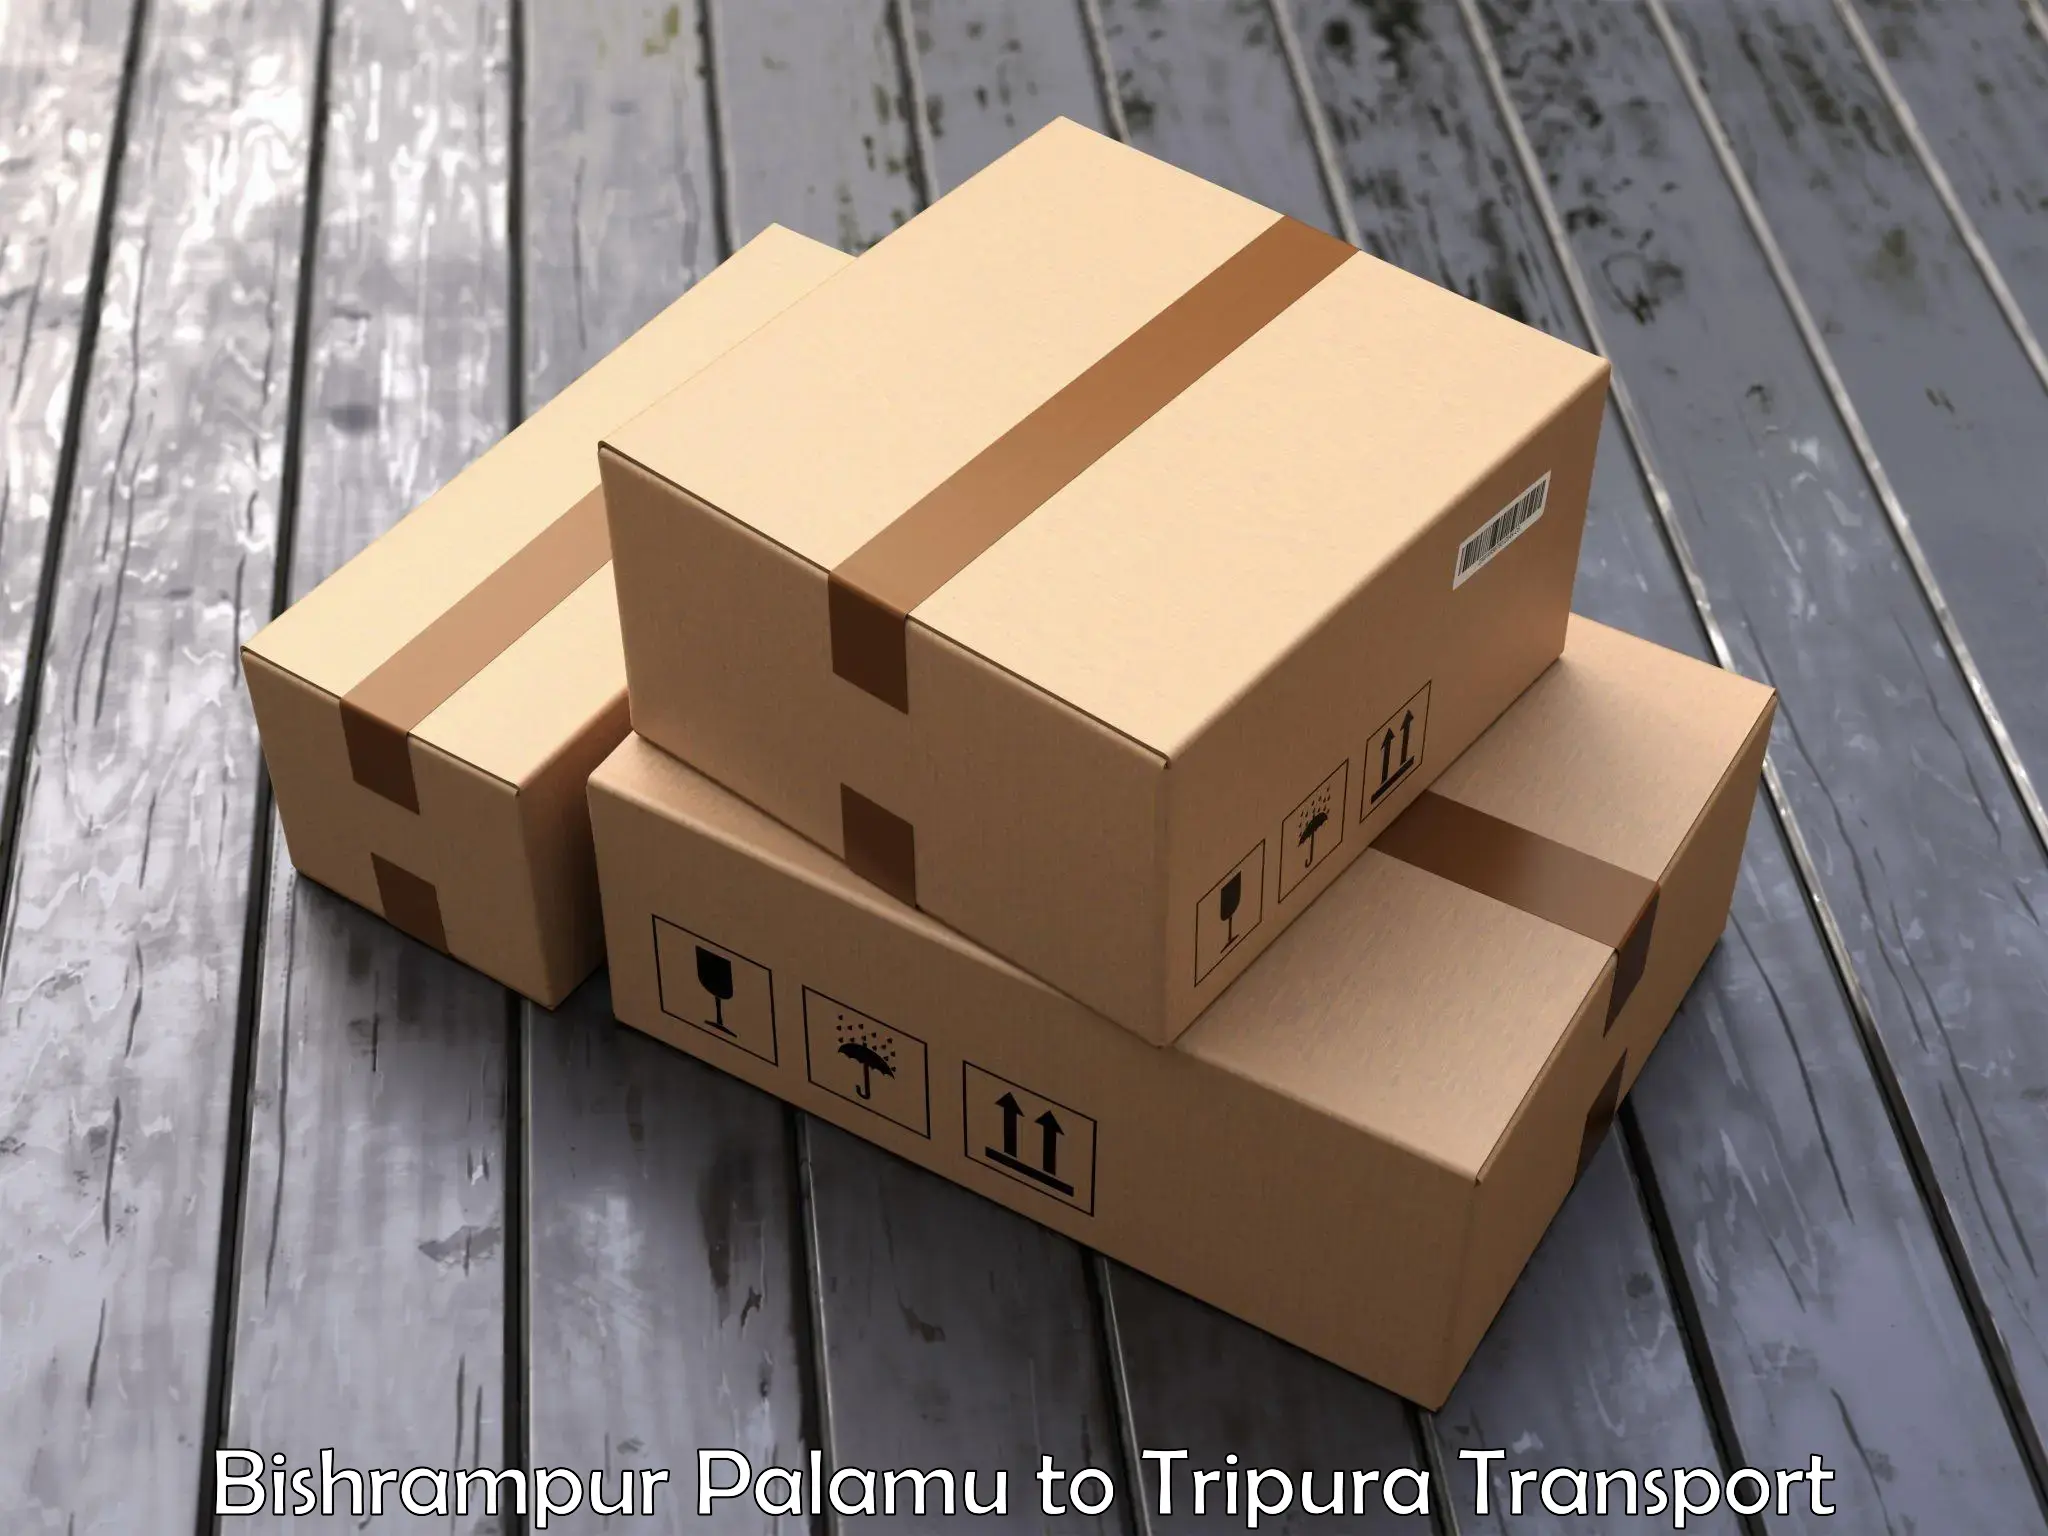 Air cargo transport services Bishrampur Palamu to Agartala